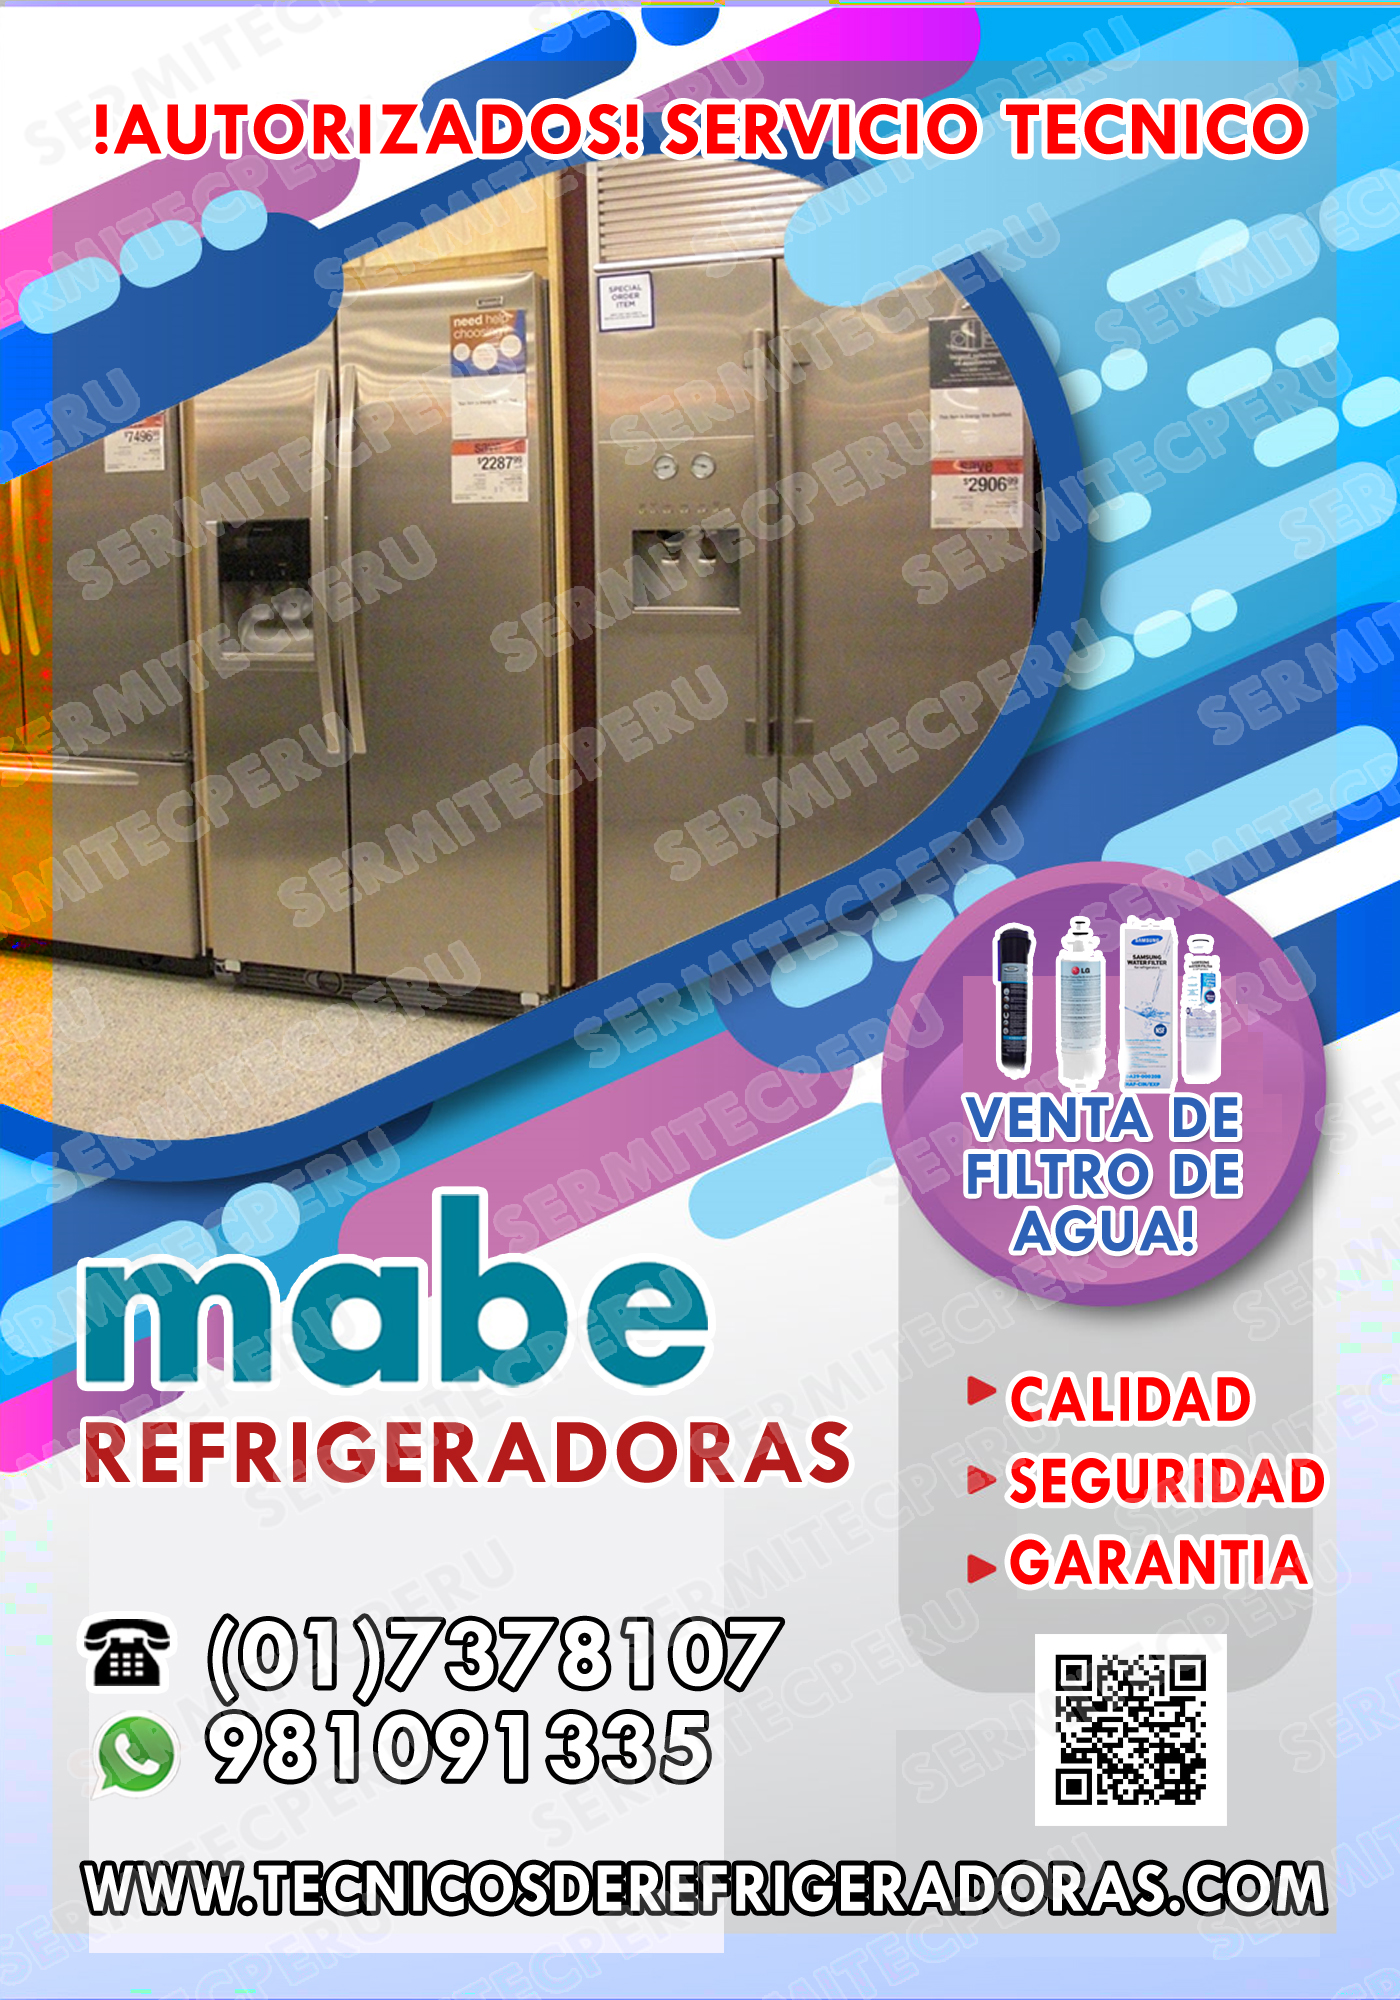 At your service Reparacion Refrigeradoras MaBe 017378107  CHOSICA